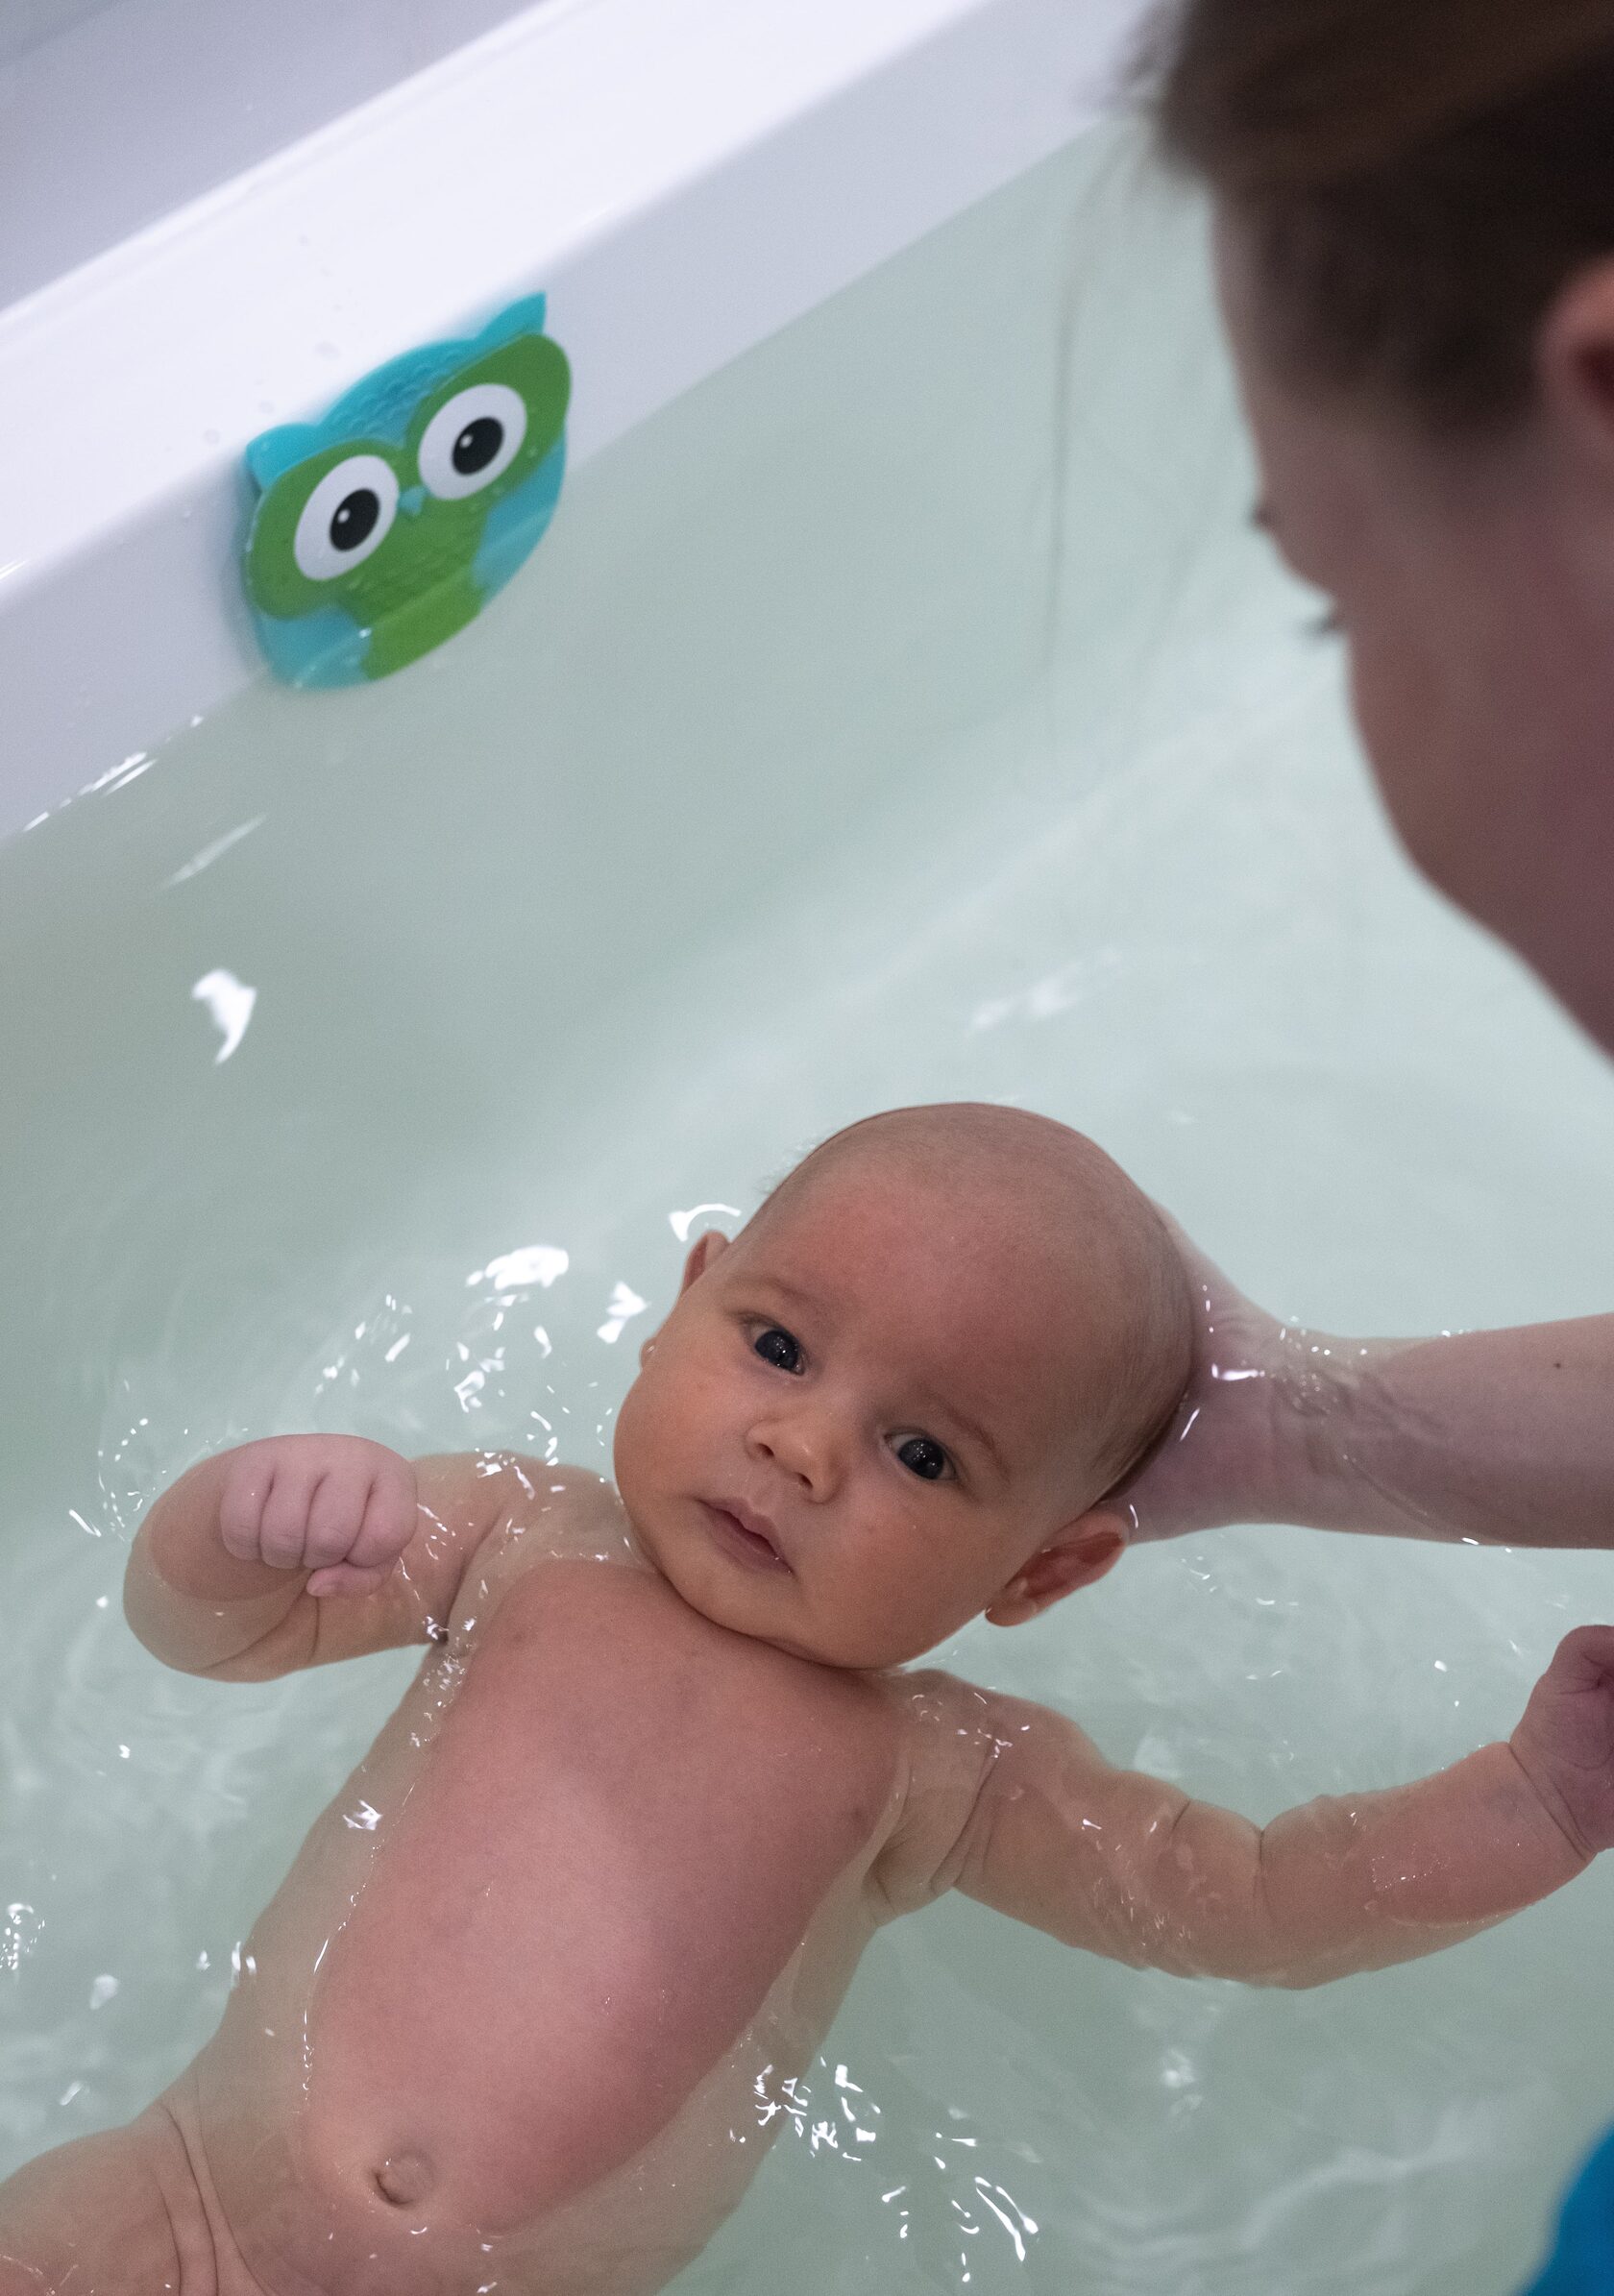 Кричит во время купания — 23 ответов | форум Babyblog